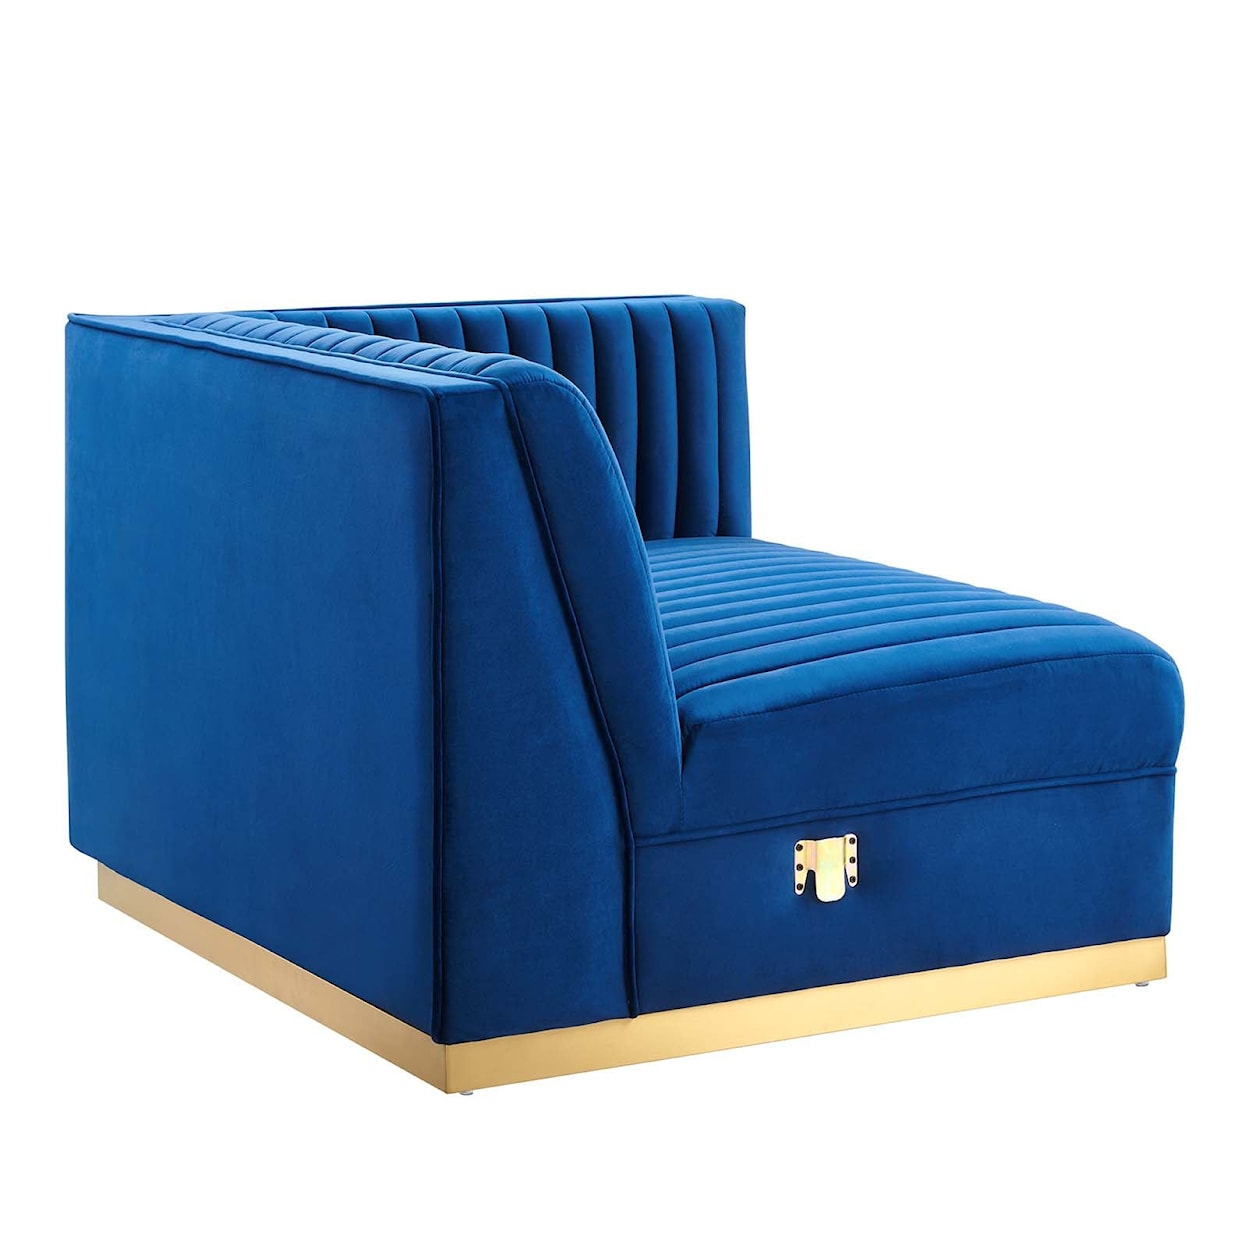 Modway Sanguine 7-Piece Left-Facing Modular Sectional Sofa